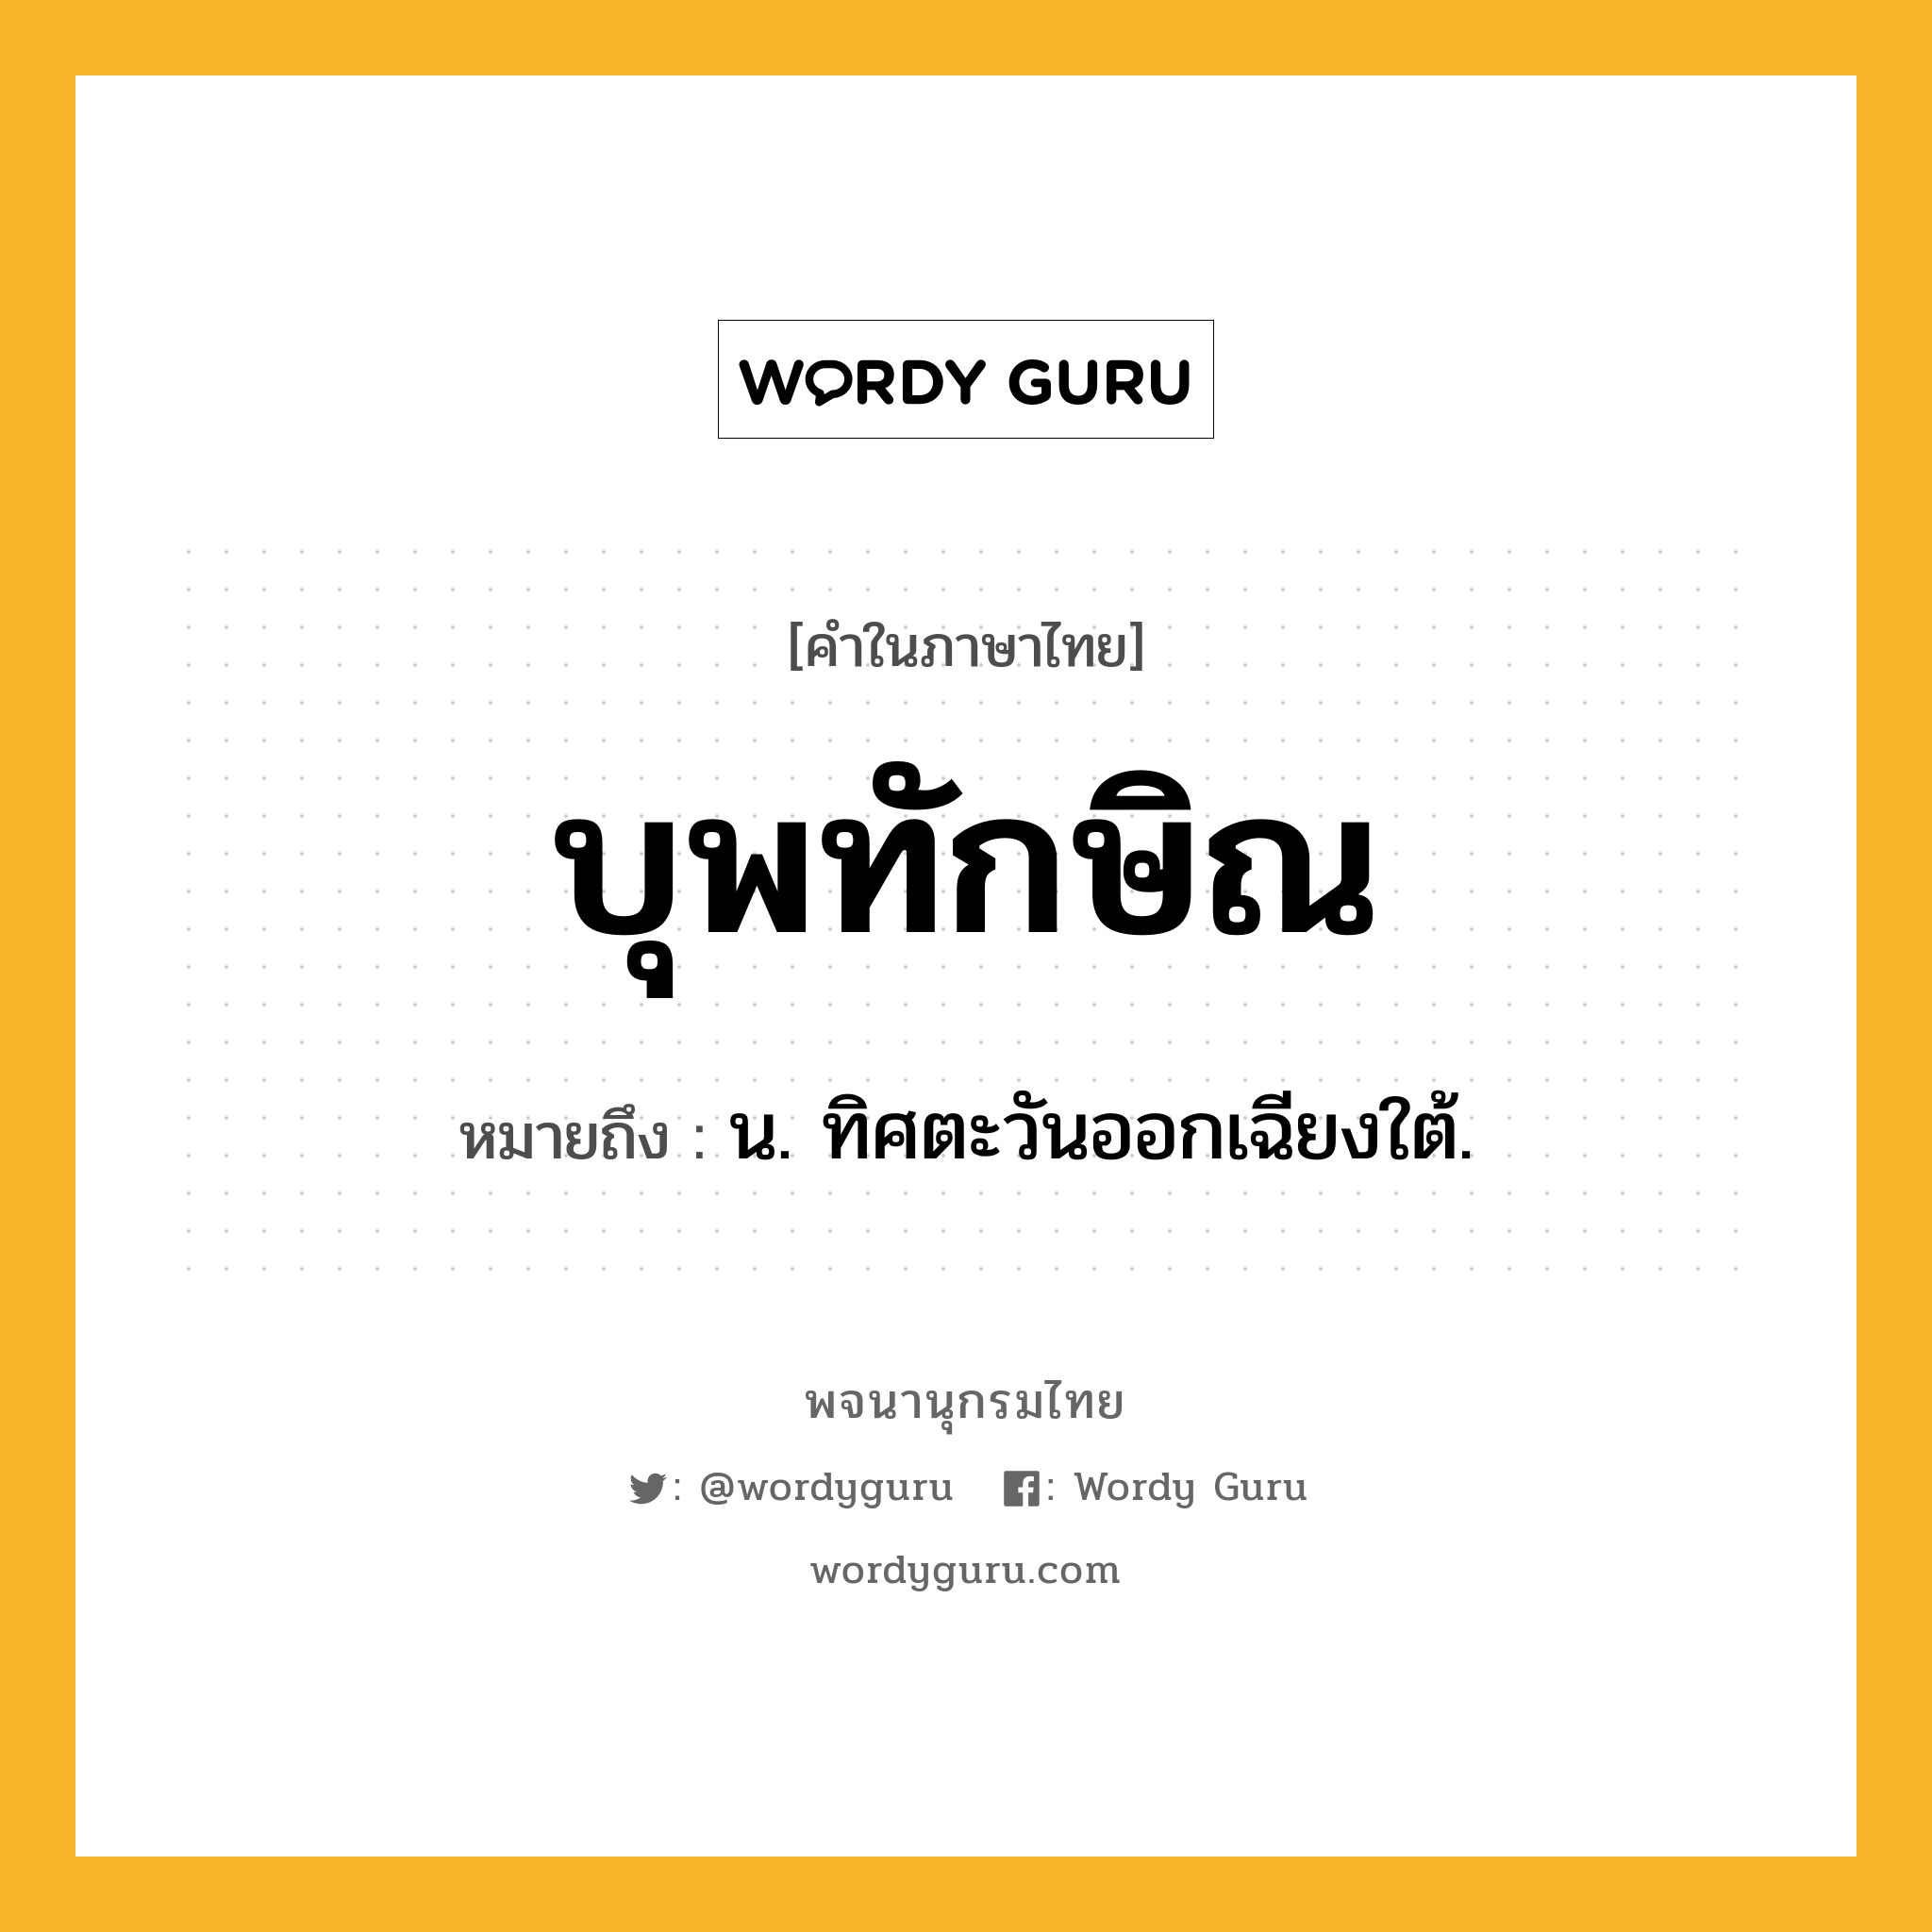 บุพทักษิณ หมายถึงอะไร?, คำในภาษาไทย บุพทักษิณ หมายถึง น. ทิศตะวันออกเฉียงใต้.